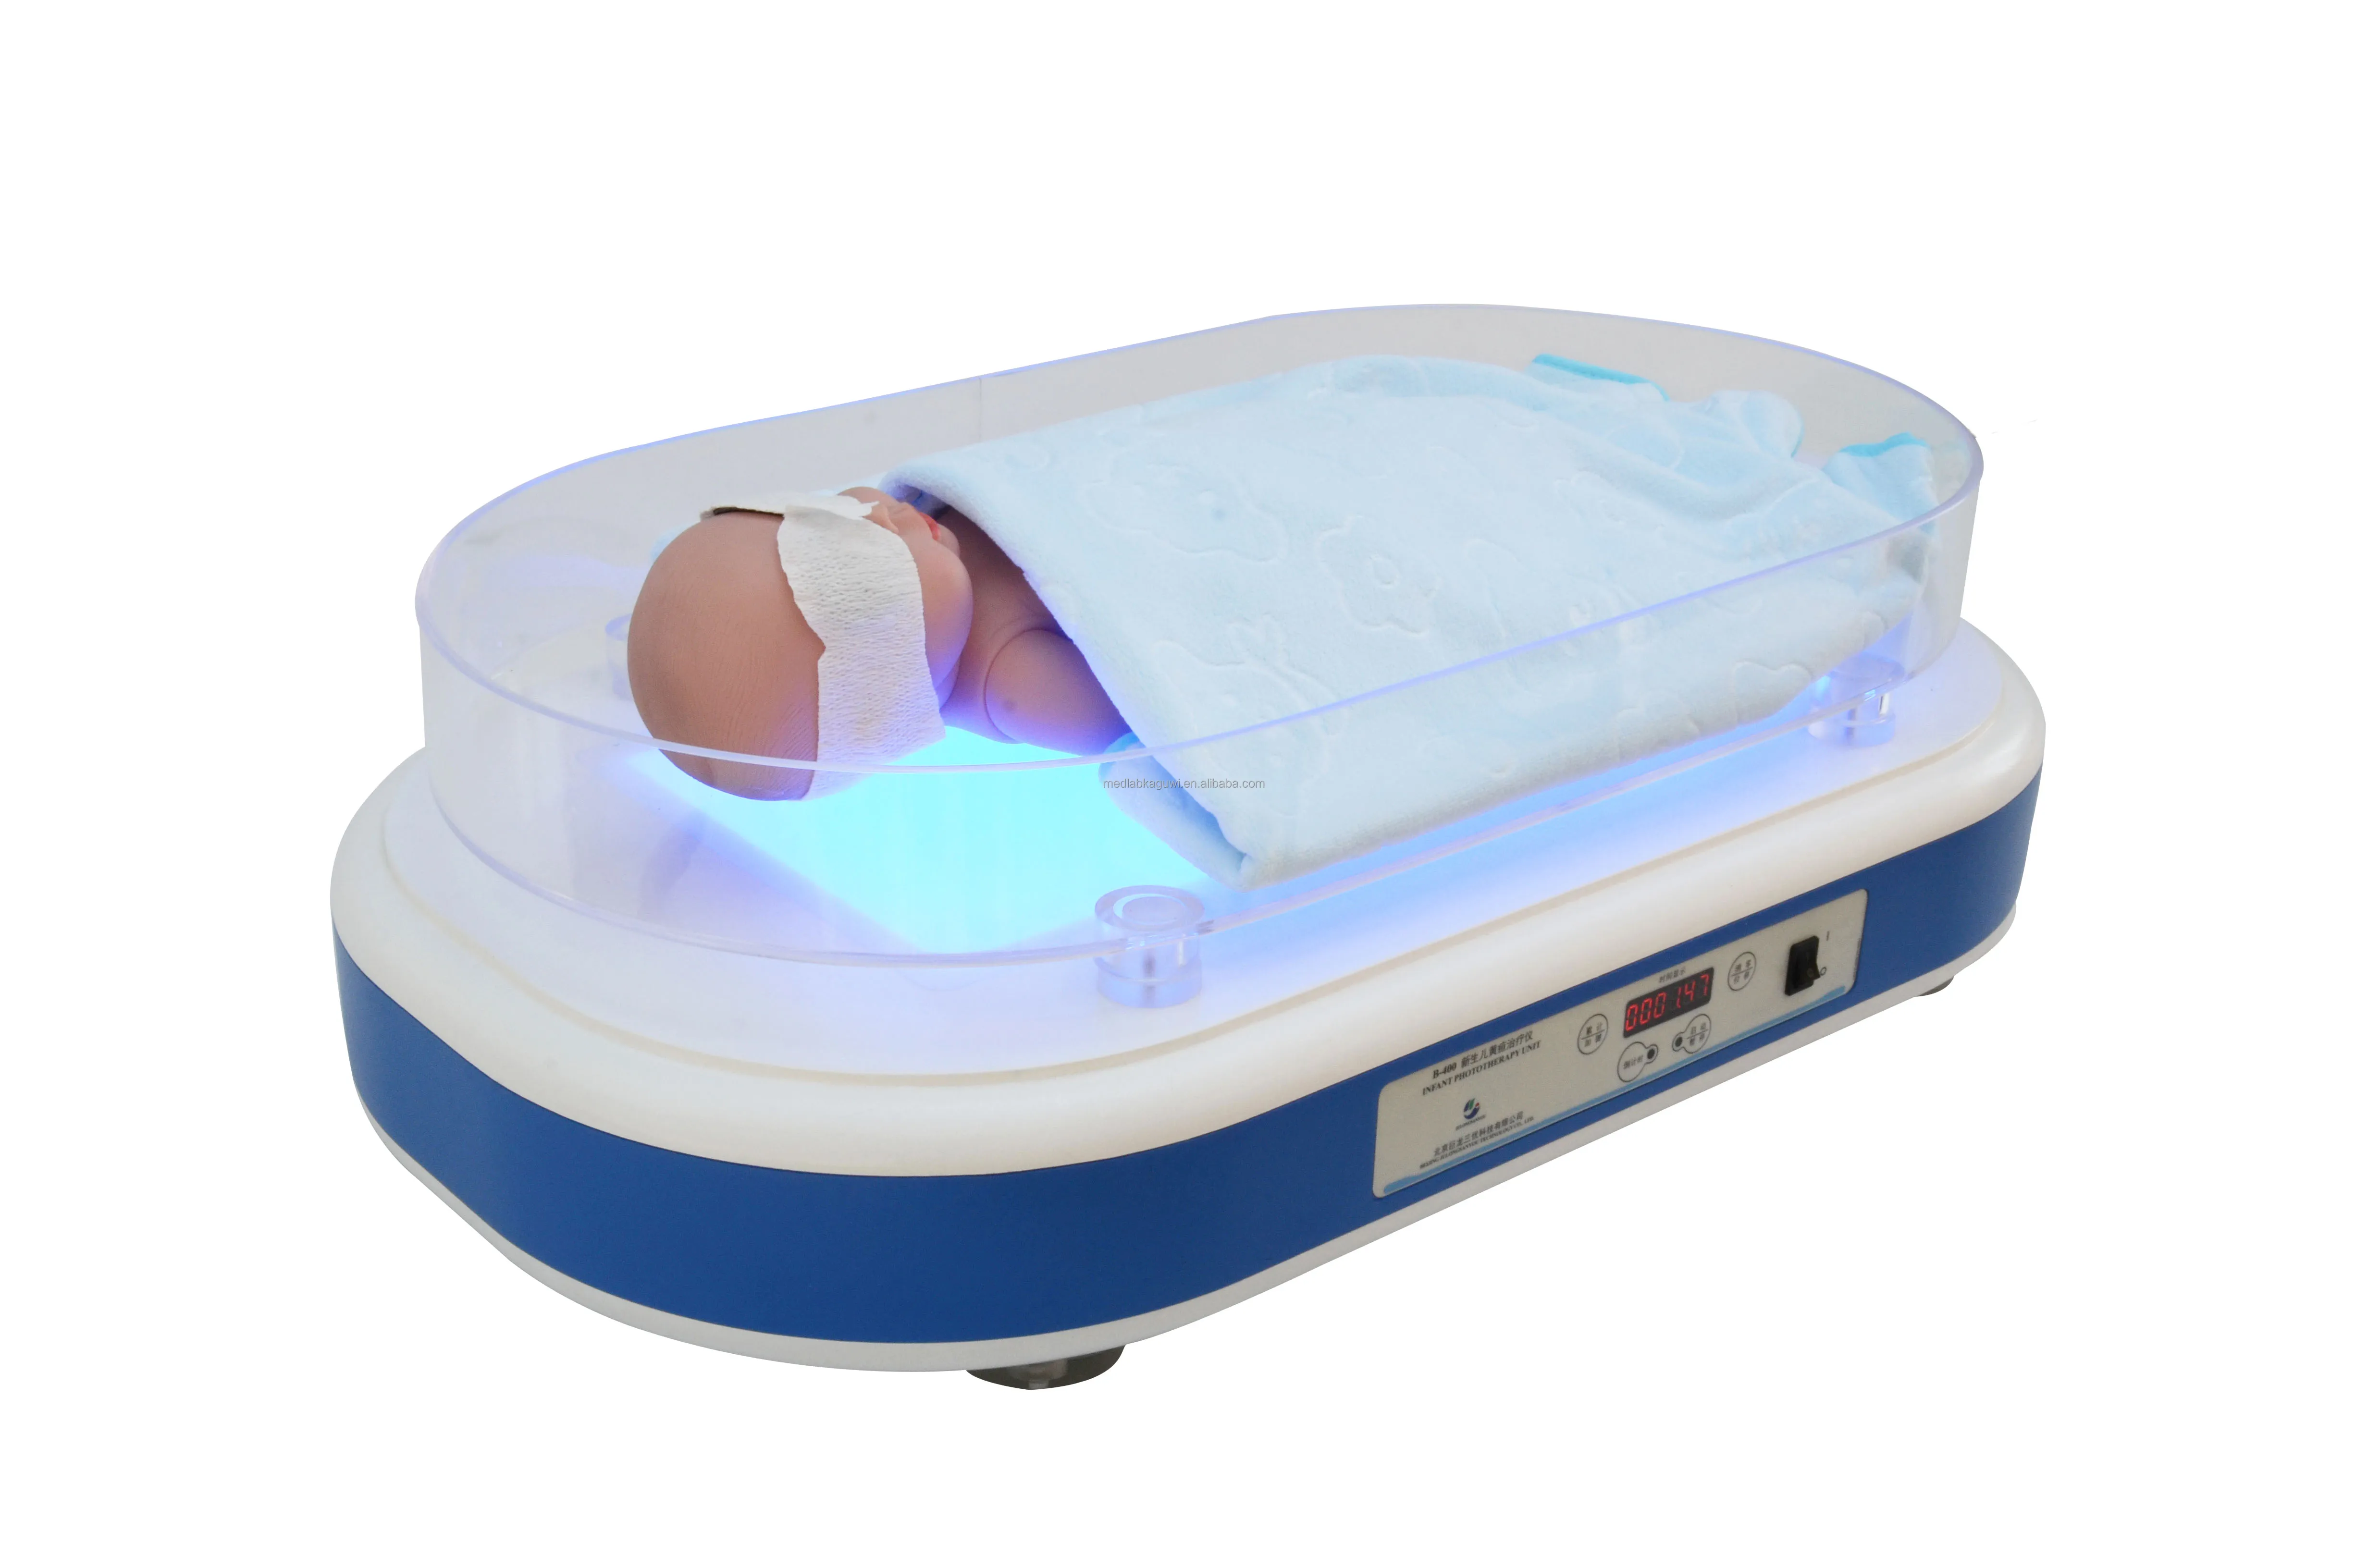 Аппараты фототерапии купить. Аппарат фототерапии для новорожденных Tosan Intensive Phototherapy 022. BBP-2000bоборудование для фототерапии билирубином новорожденных. Лампа для фототерапии новорожденных Medela. Аппарат билирубиновой фототерапии для новорожденных модель XHZ-90l.